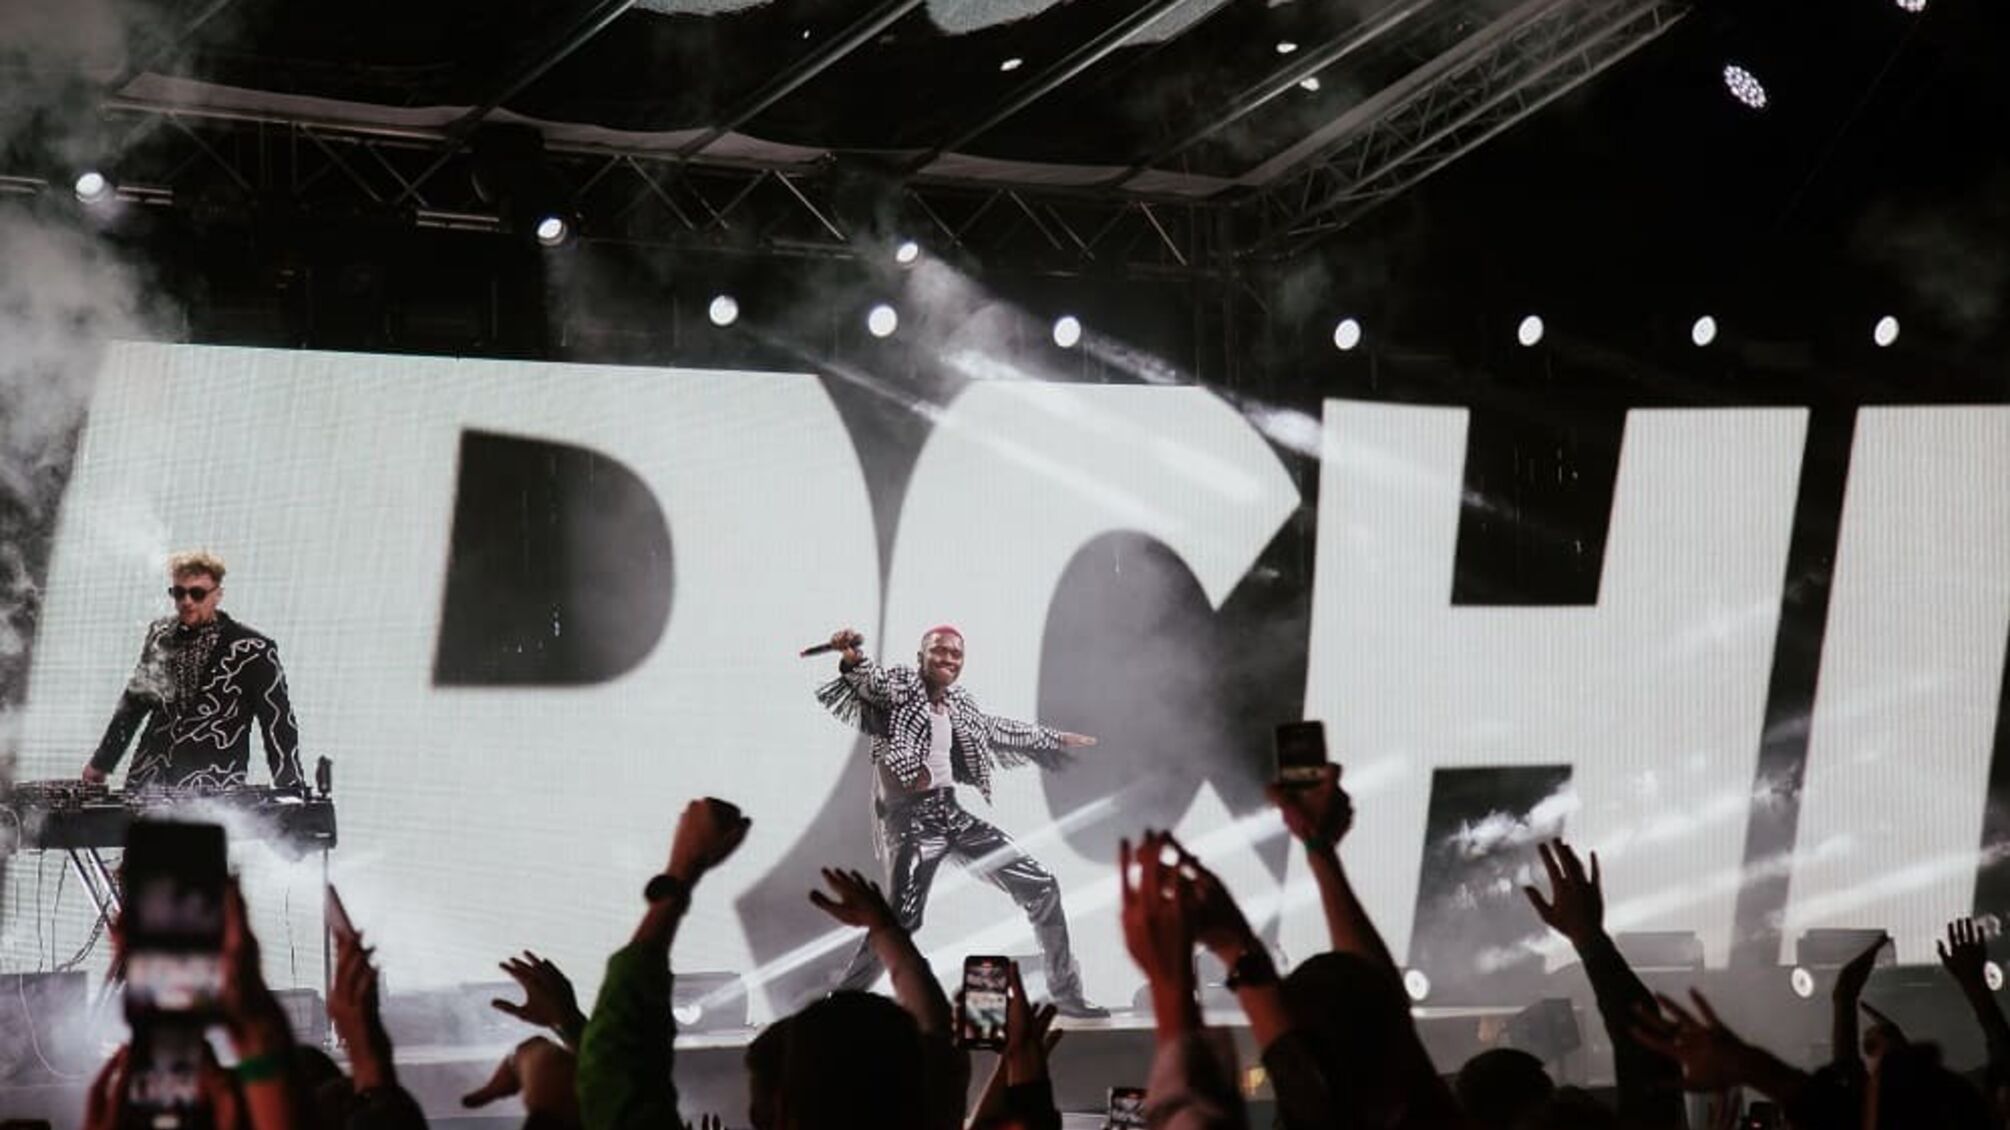 TVORCHI анонсували грандіозне шоу у Києві на підтримку нового альбому Planet X